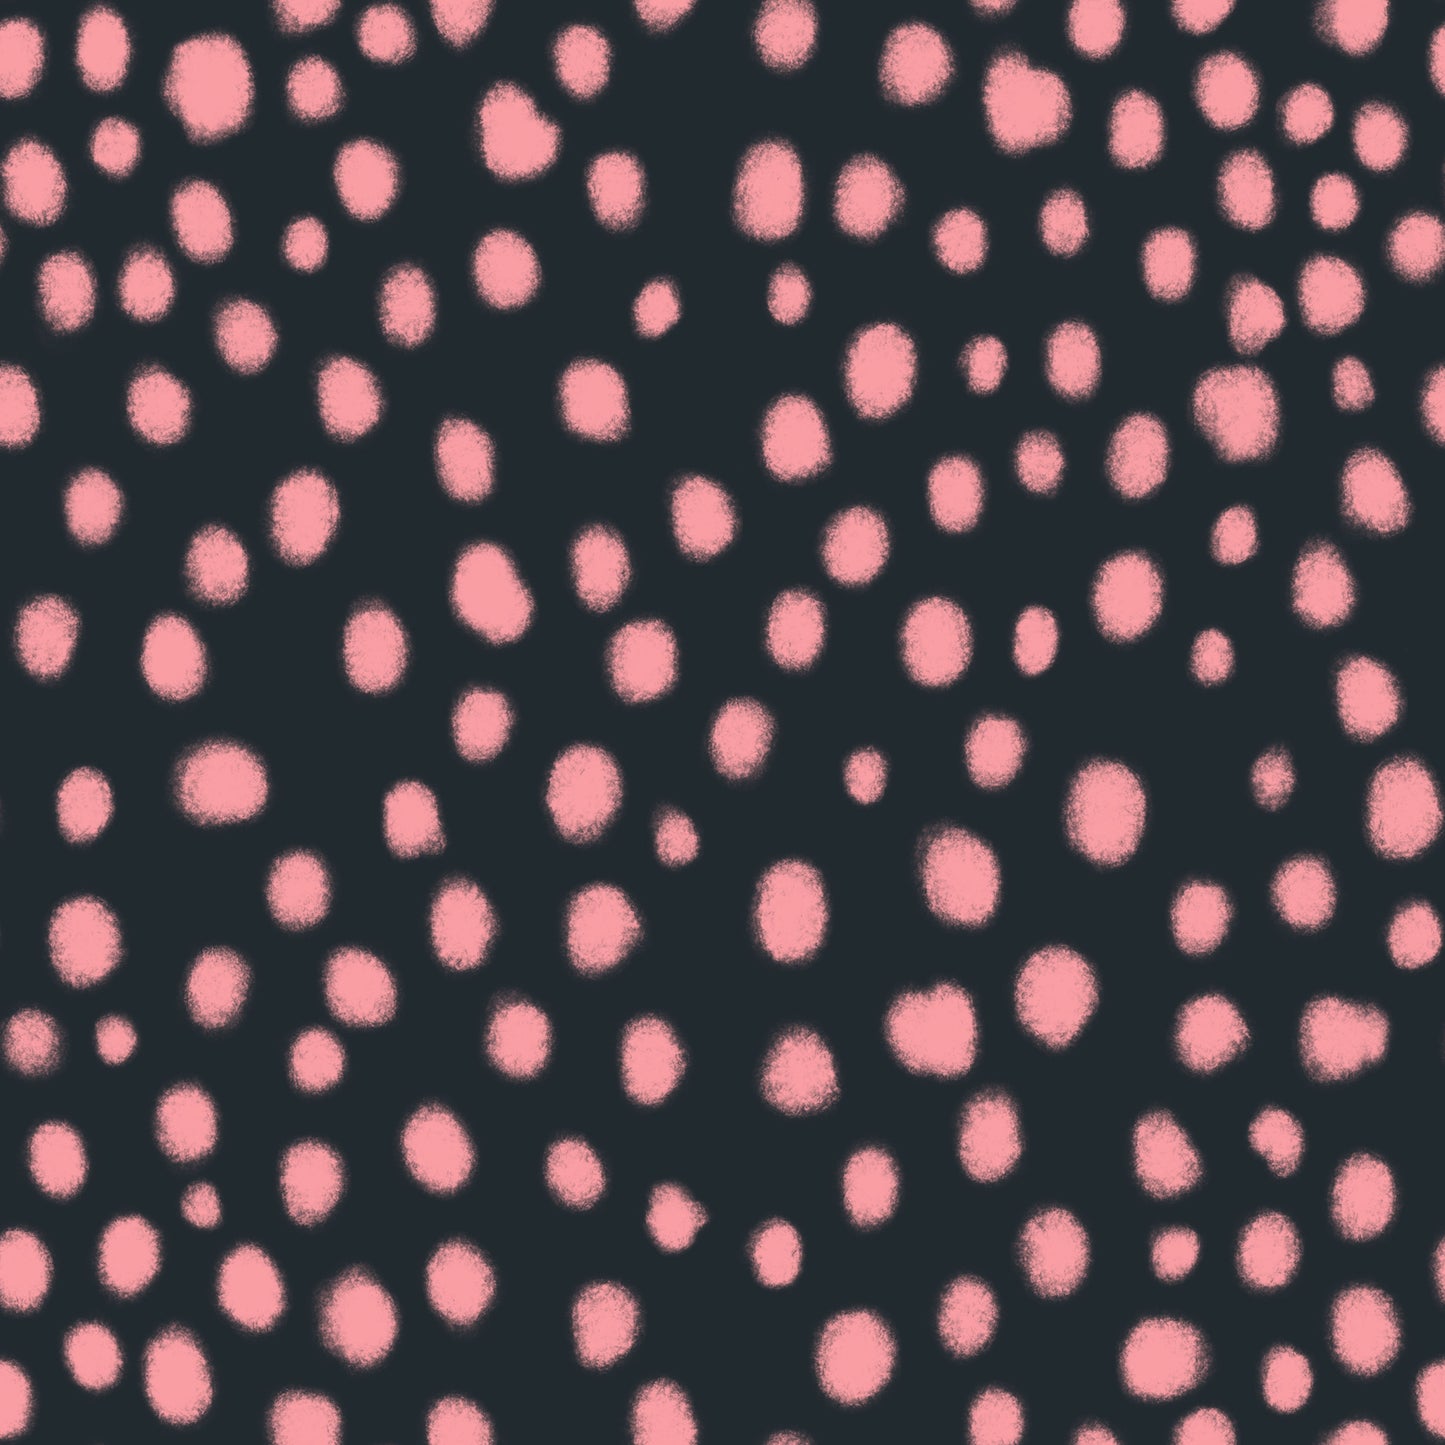 Pink and Black Cheetah Spots 1